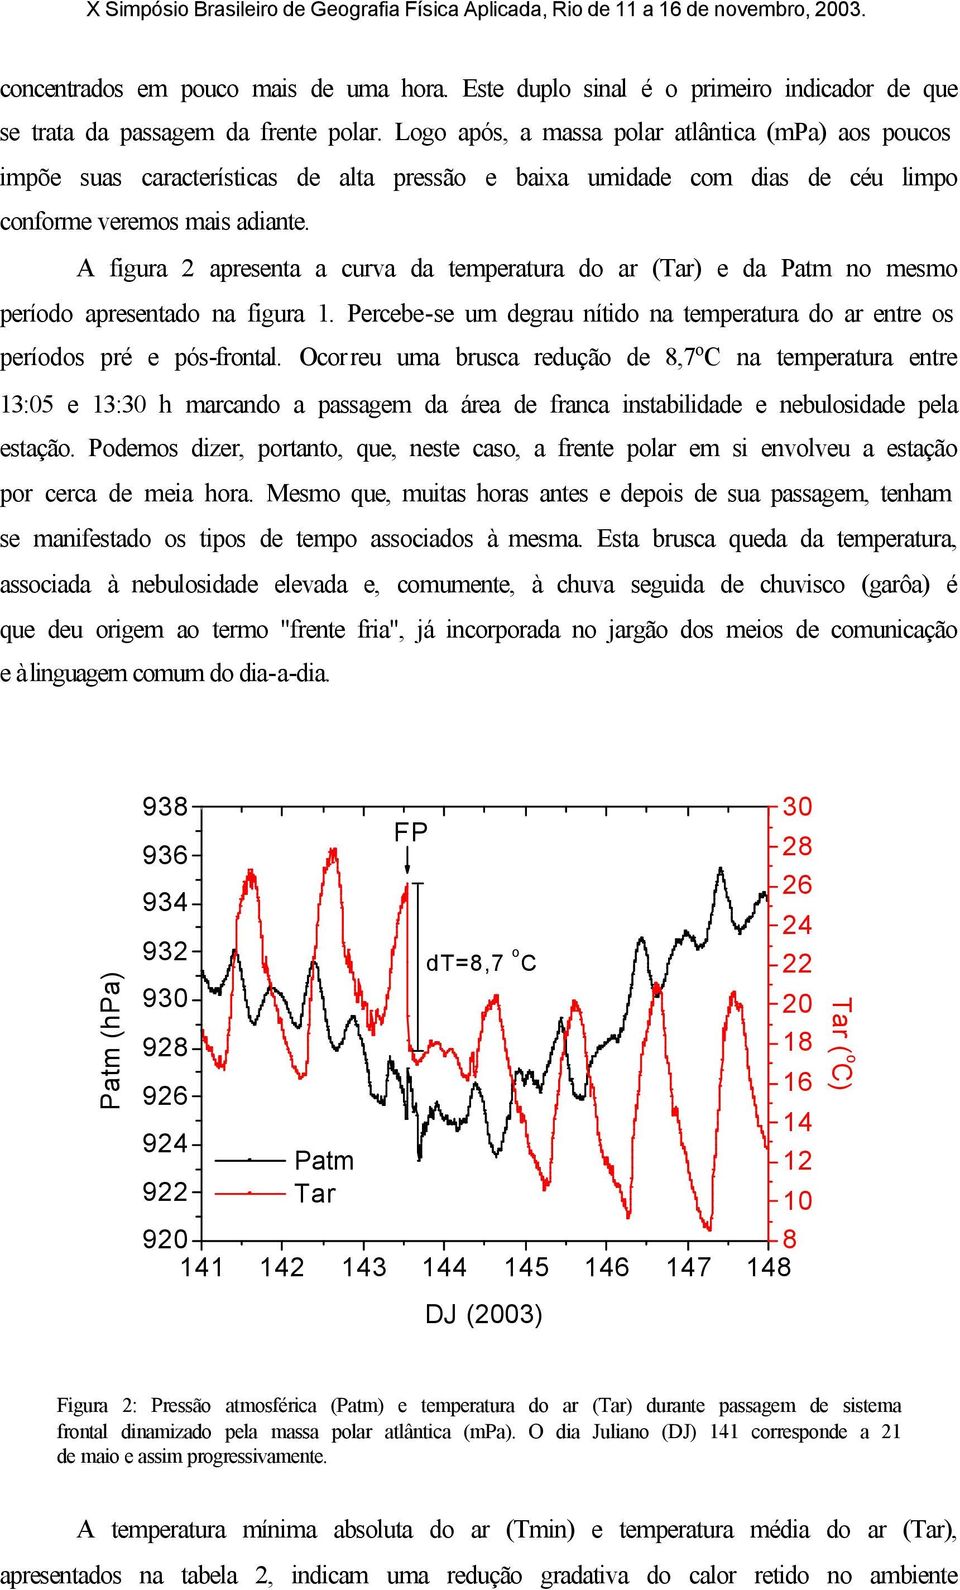 A figura 2 apresenta a curva da temperatura do ar (Tar) e da Patm no mesmo período apresentado na figura 1. Percebe-se um degrau nítido na temperatura do ar entre os períodos pré e pós-frontal.